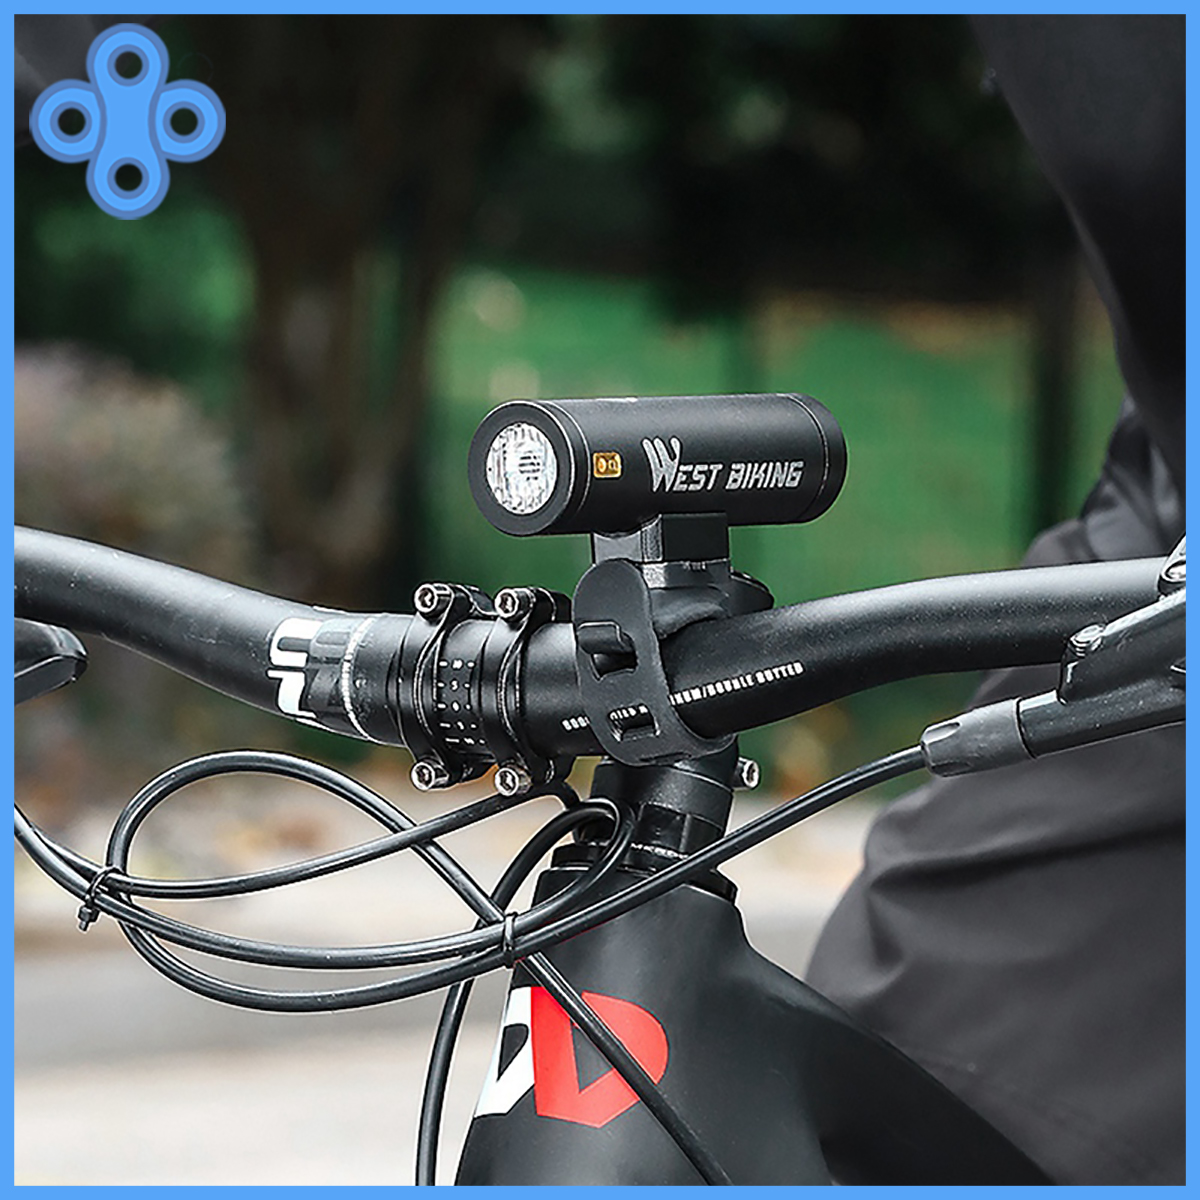 Đèn pha West Biking 400/1300lm chính hãng chống nước cho xe đạp